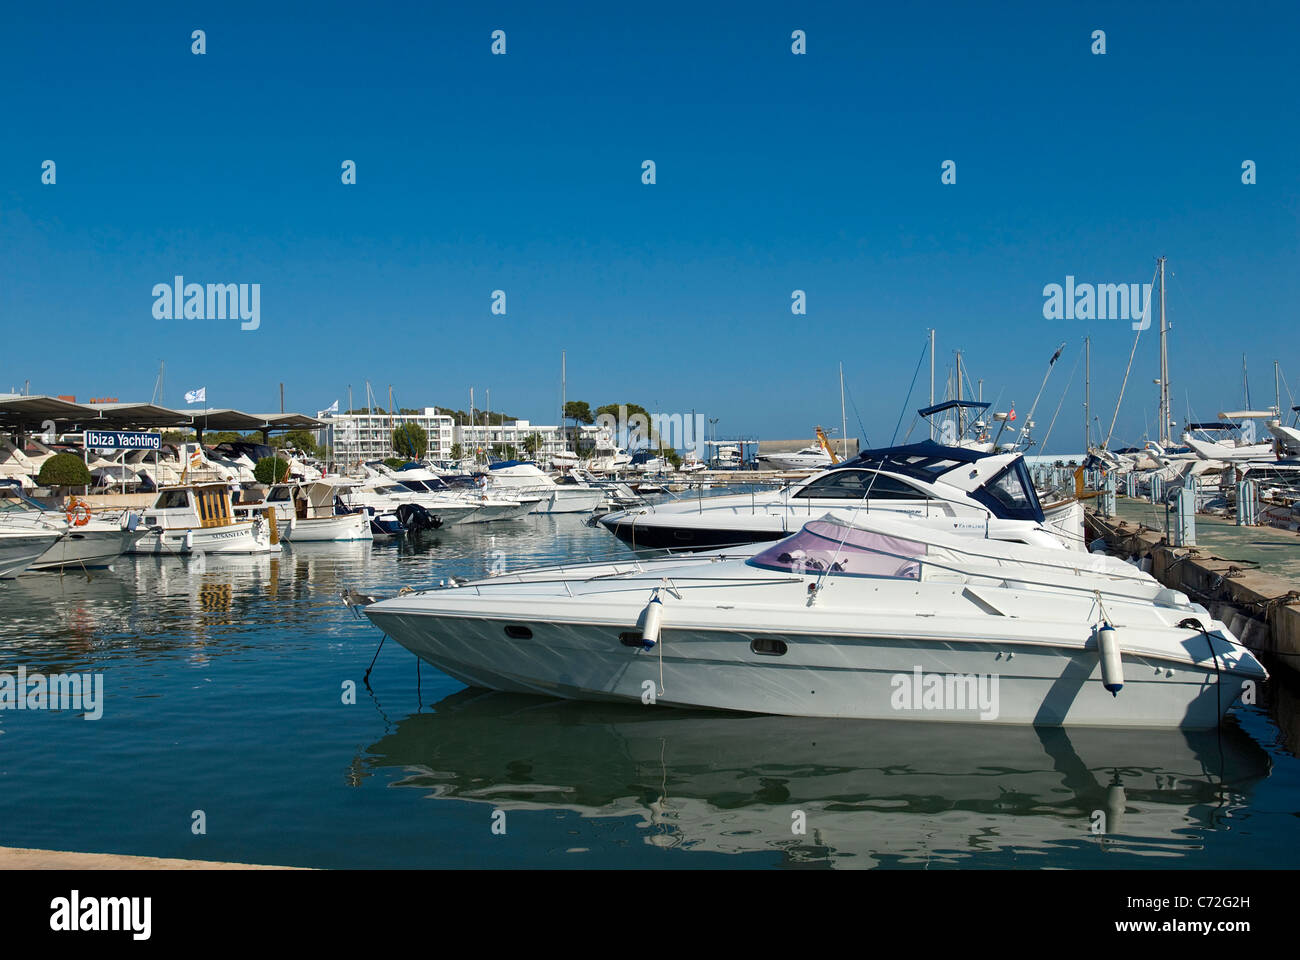 Marina at Santa Eulalia, Ibiza, Balearics, Spain Stock Photo